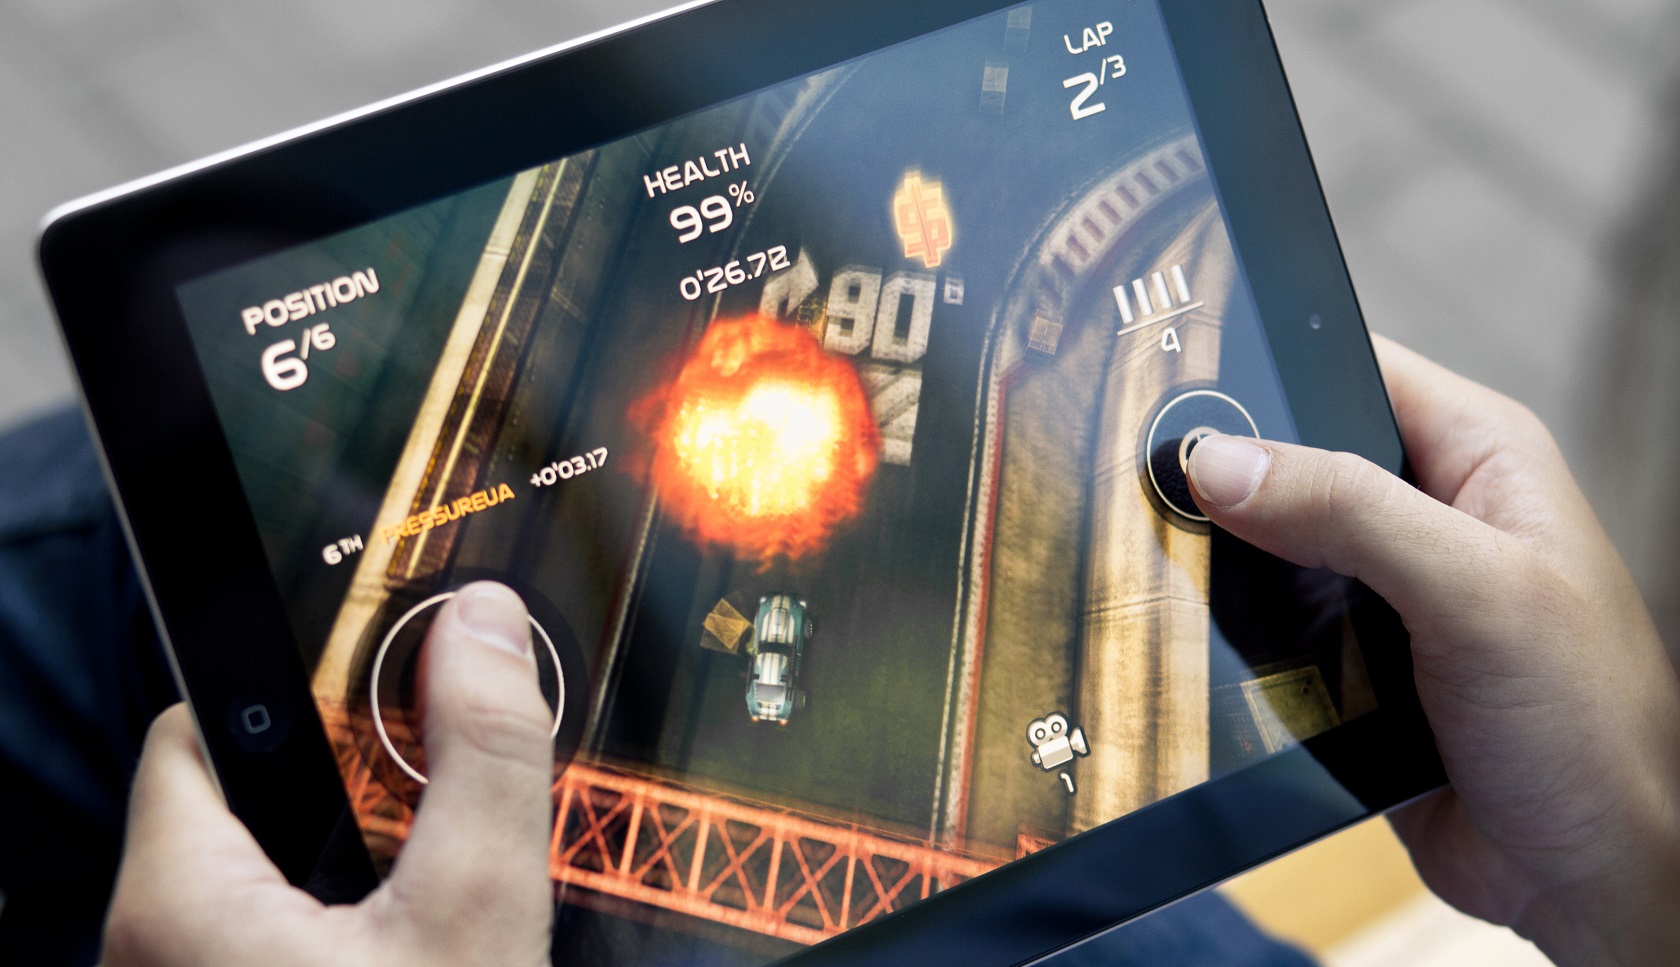 Tablet Gaming Shutterstock